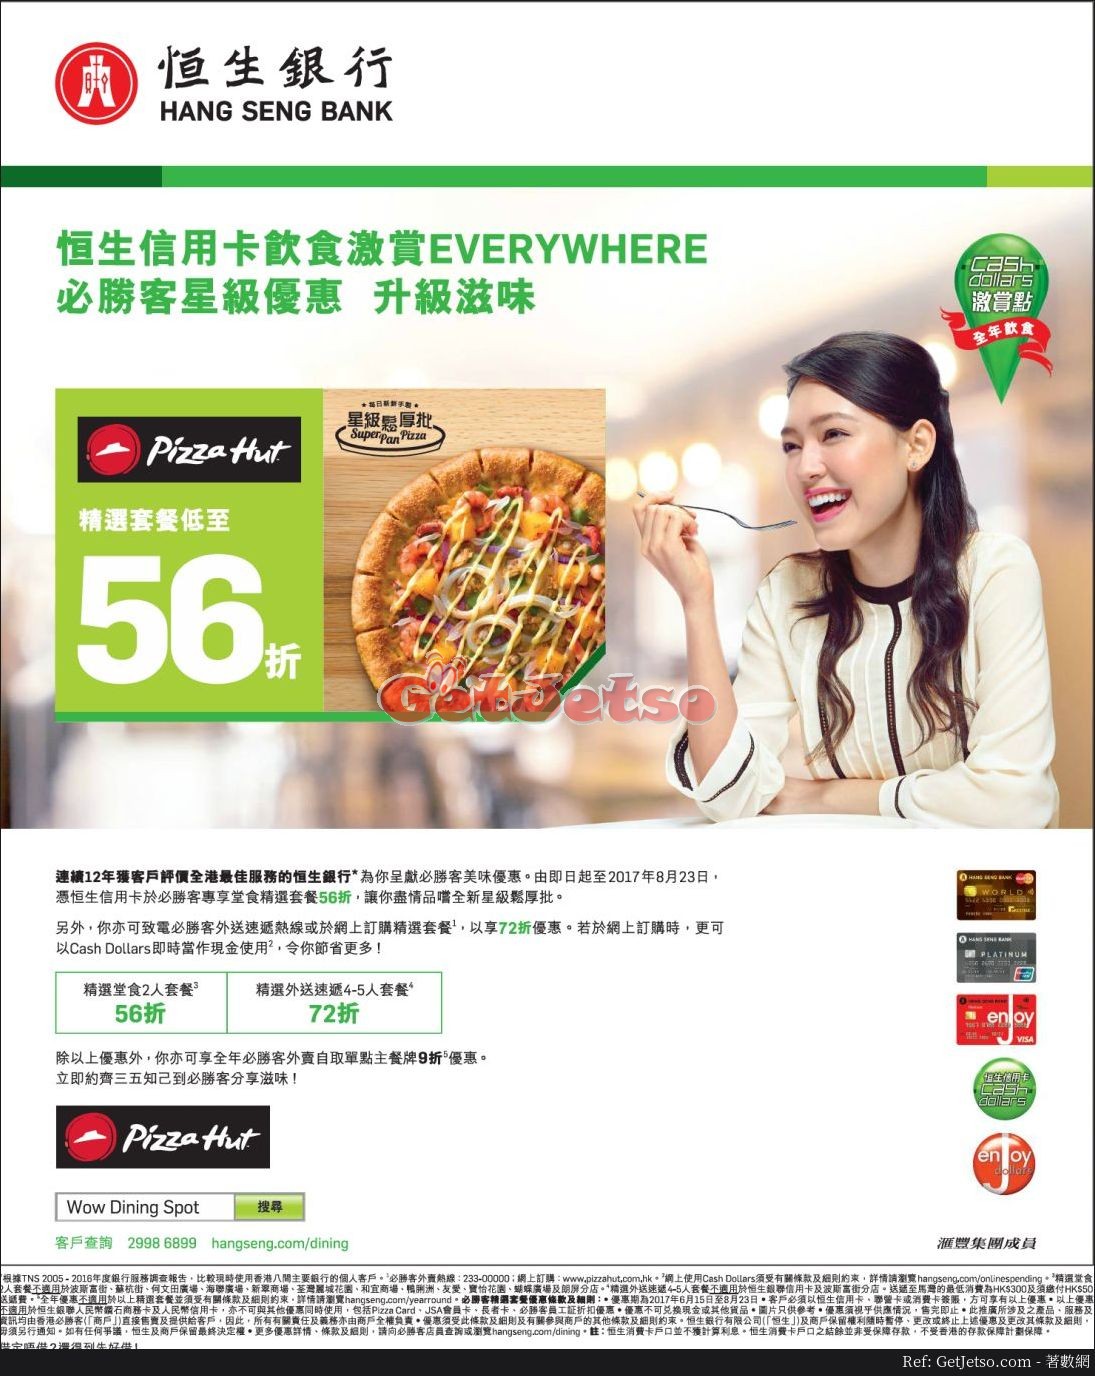 恒生信用卡享pizza hut低至56折優惠(至17年8月23日)圖片1